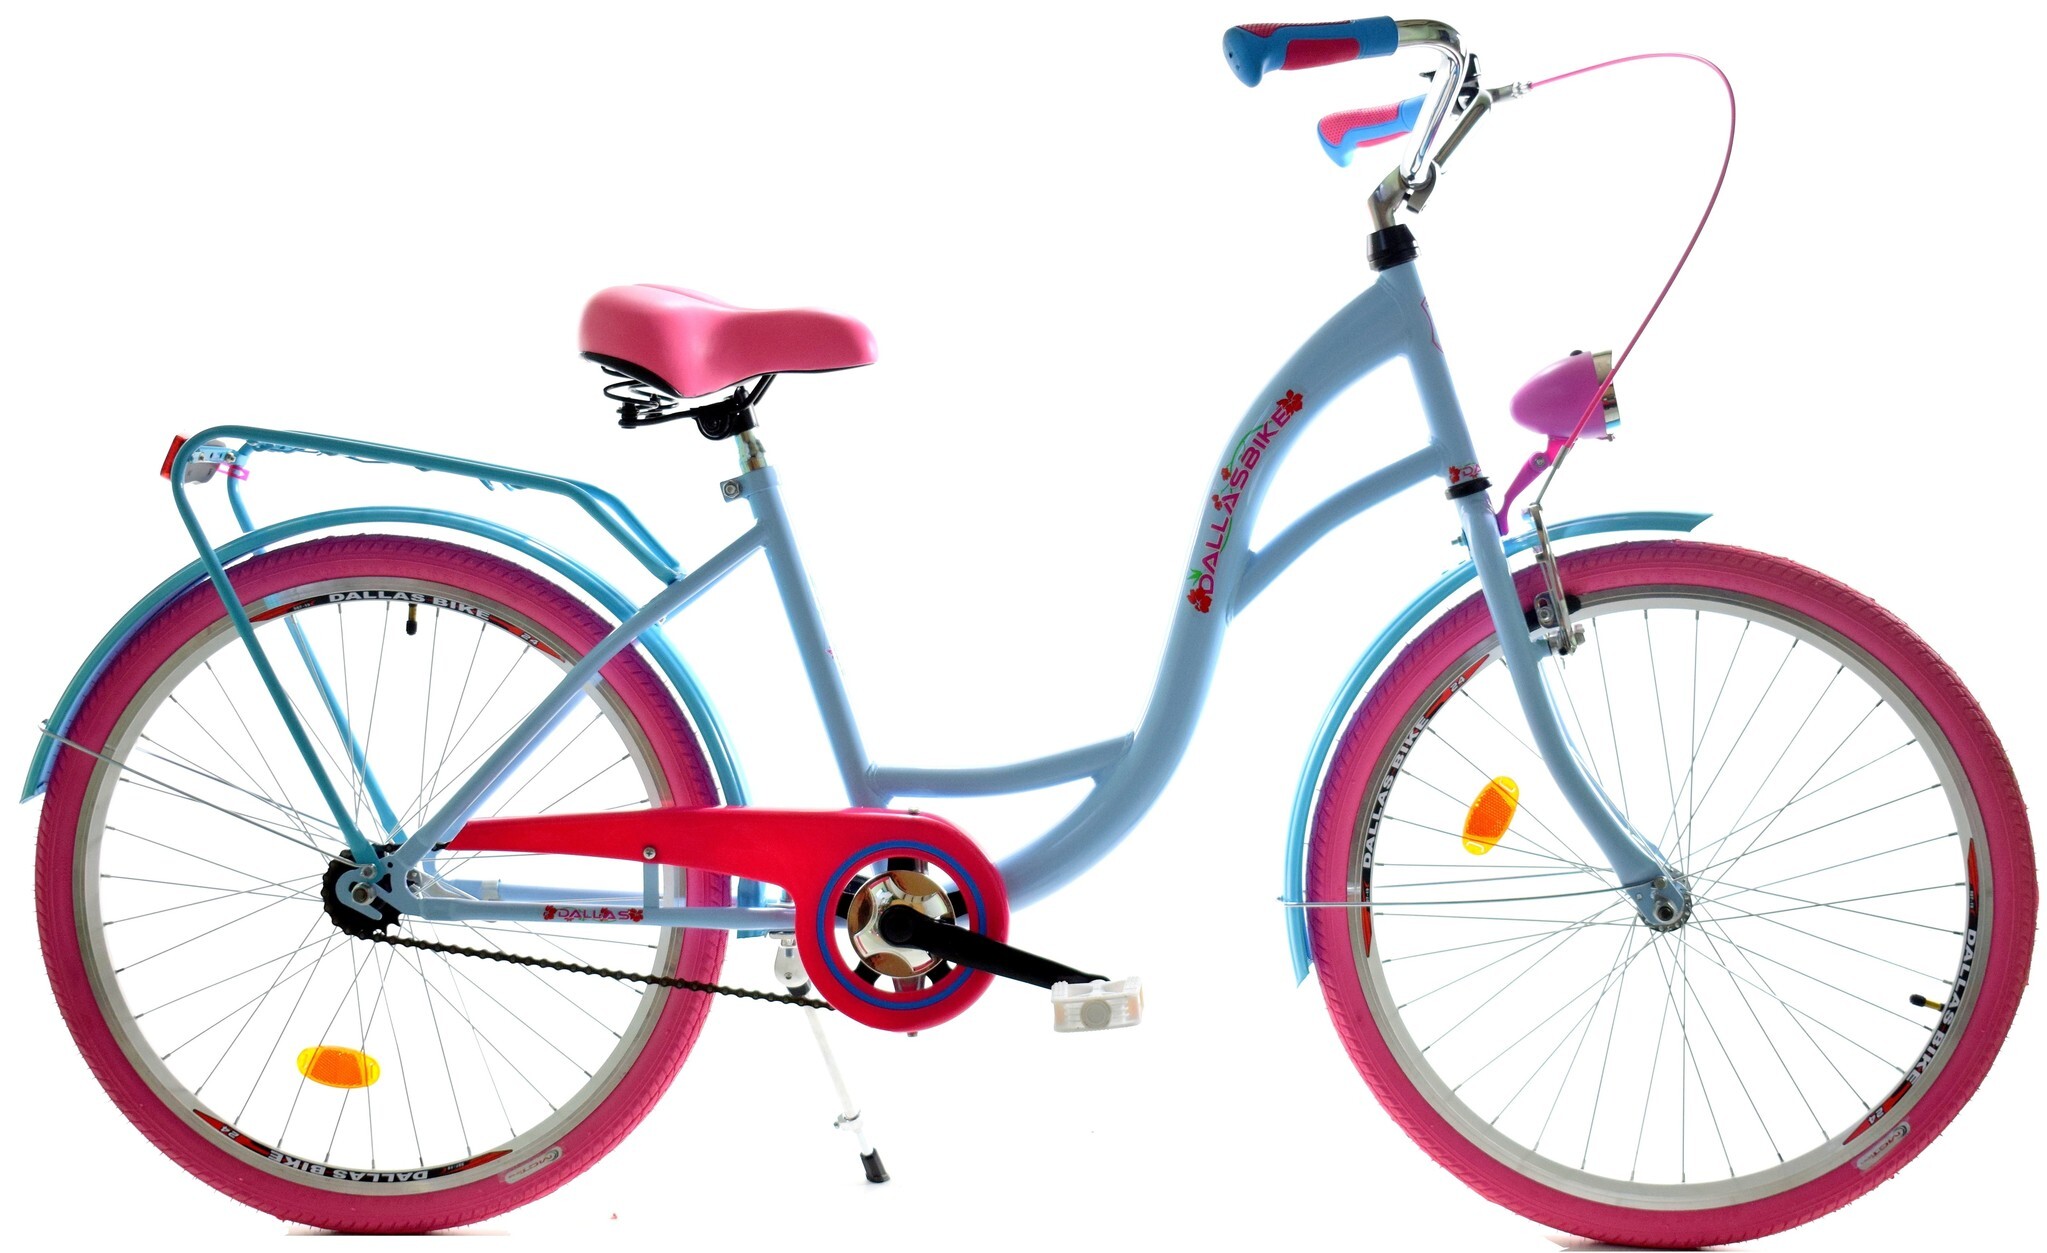 Viking Choice Meisjesfiets 24 inch stevig model roze met blauw van Dallas Bike